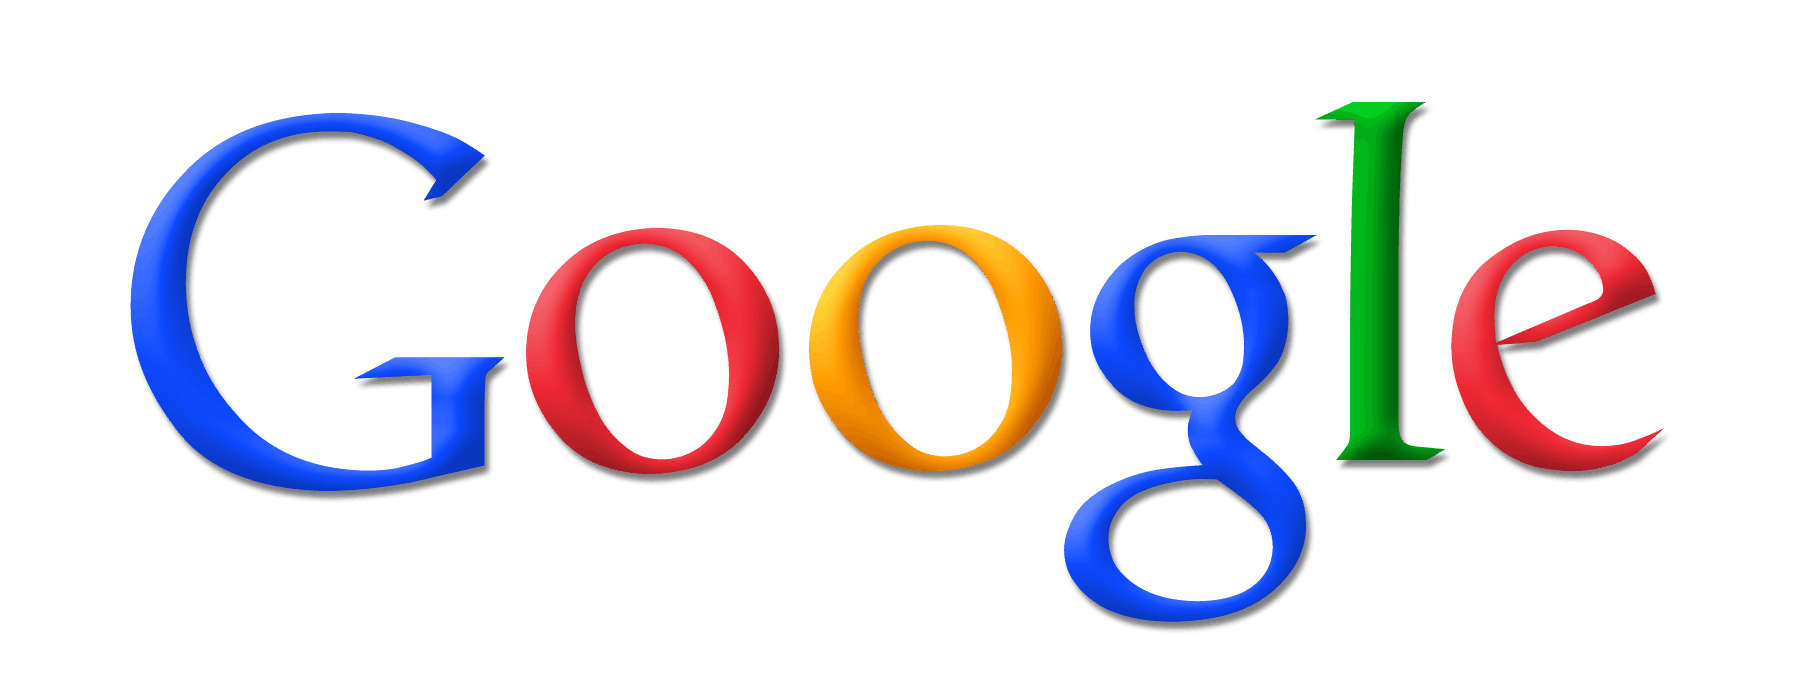 new-google-logo-knockoff1.png